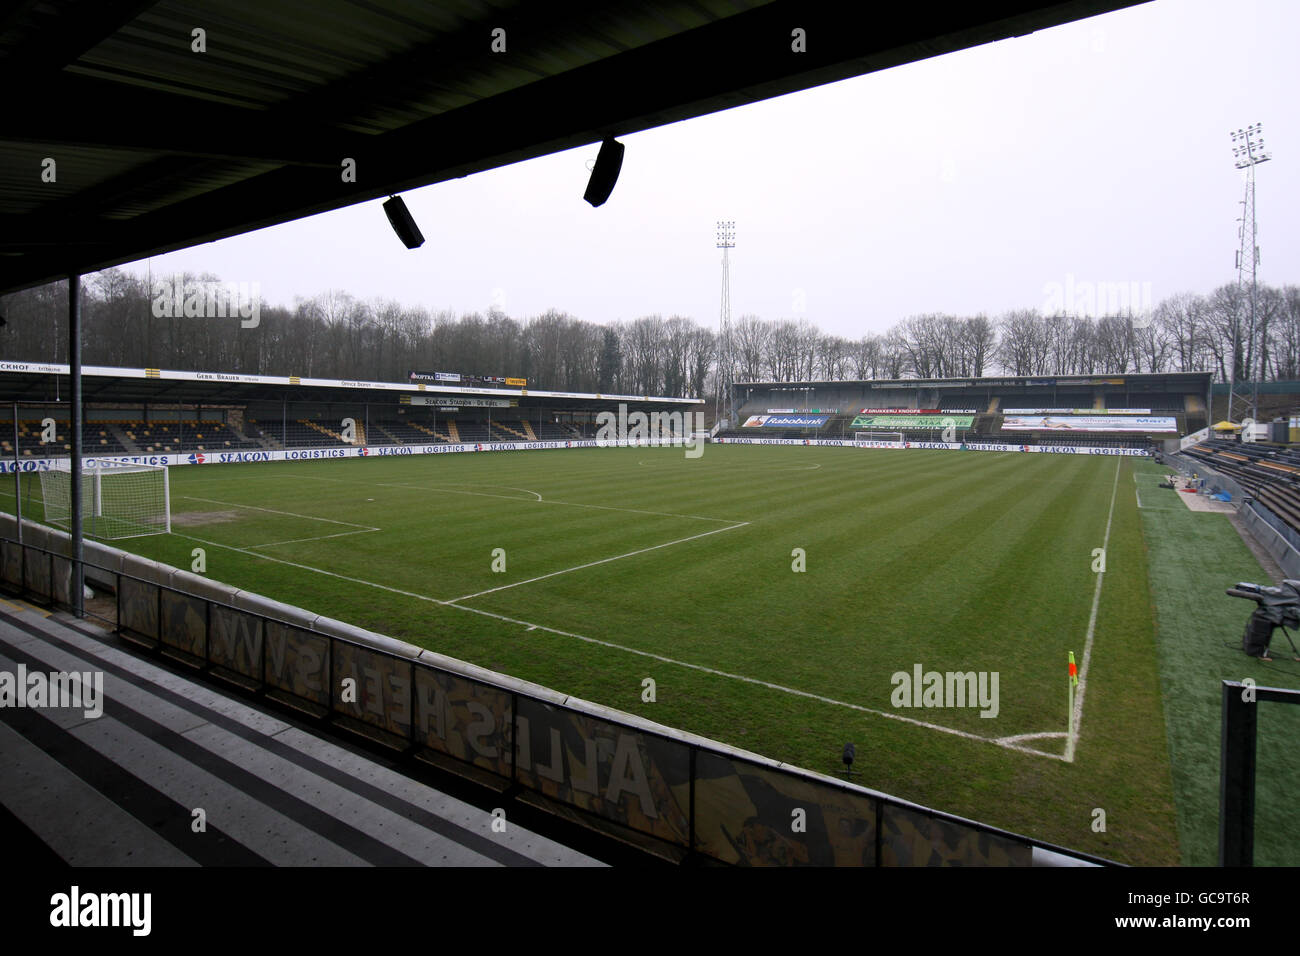 Soccer - Dutch Eredivisie - VVV Venlo v Vitesse Arnhem - De Koel. General view of the Stadion De Koel Stock Photo